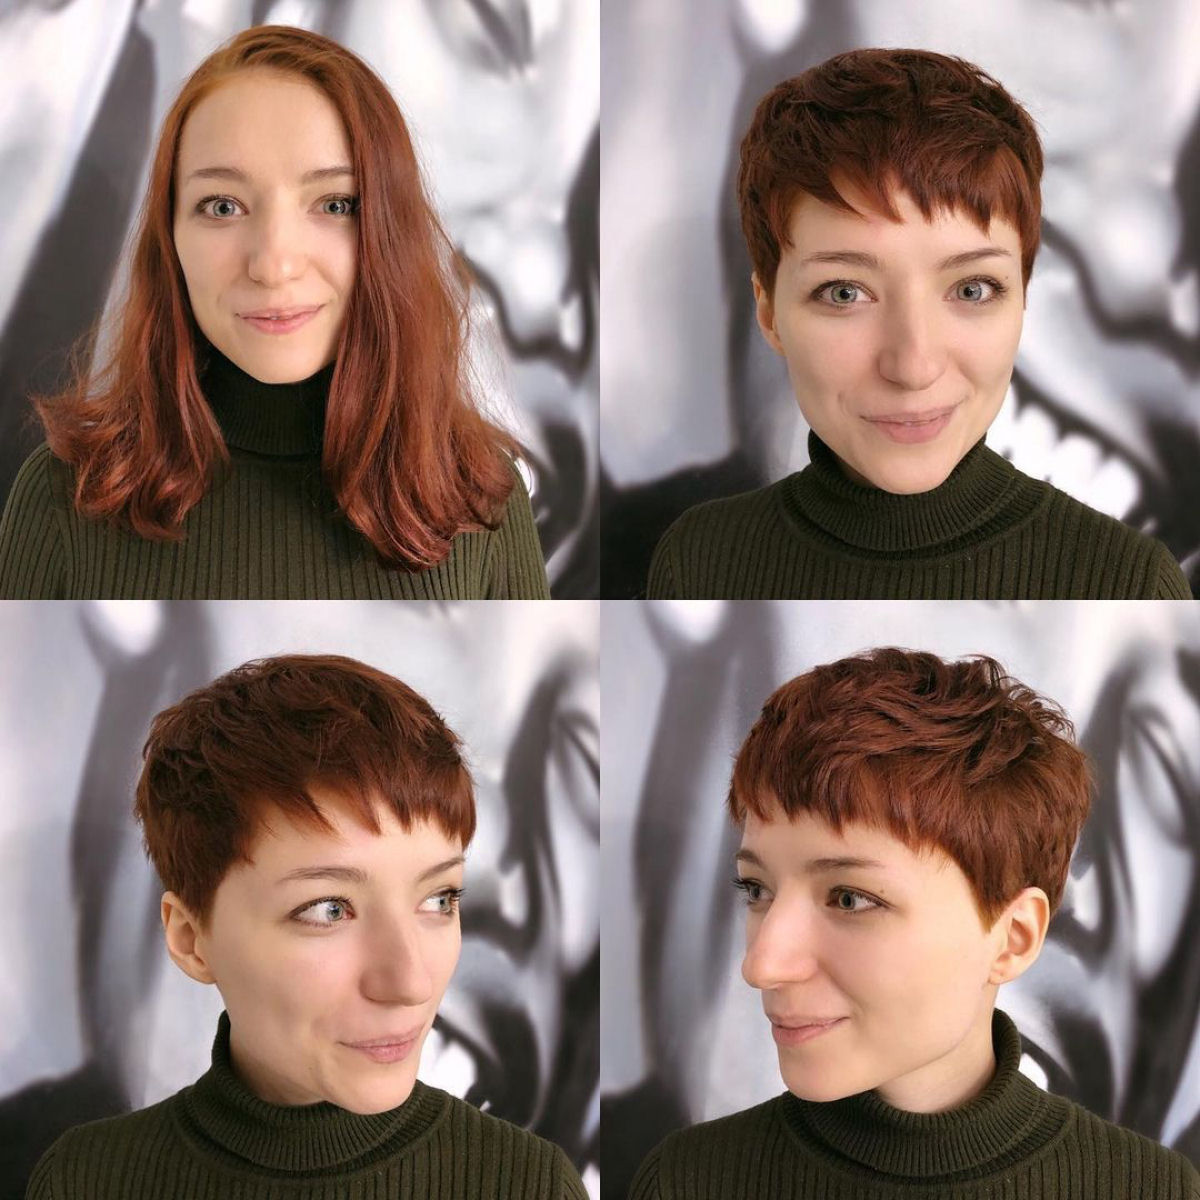 Cabeleireira moscovita demonstra que a beleza não se mede pelo comprimento do cabelo 19